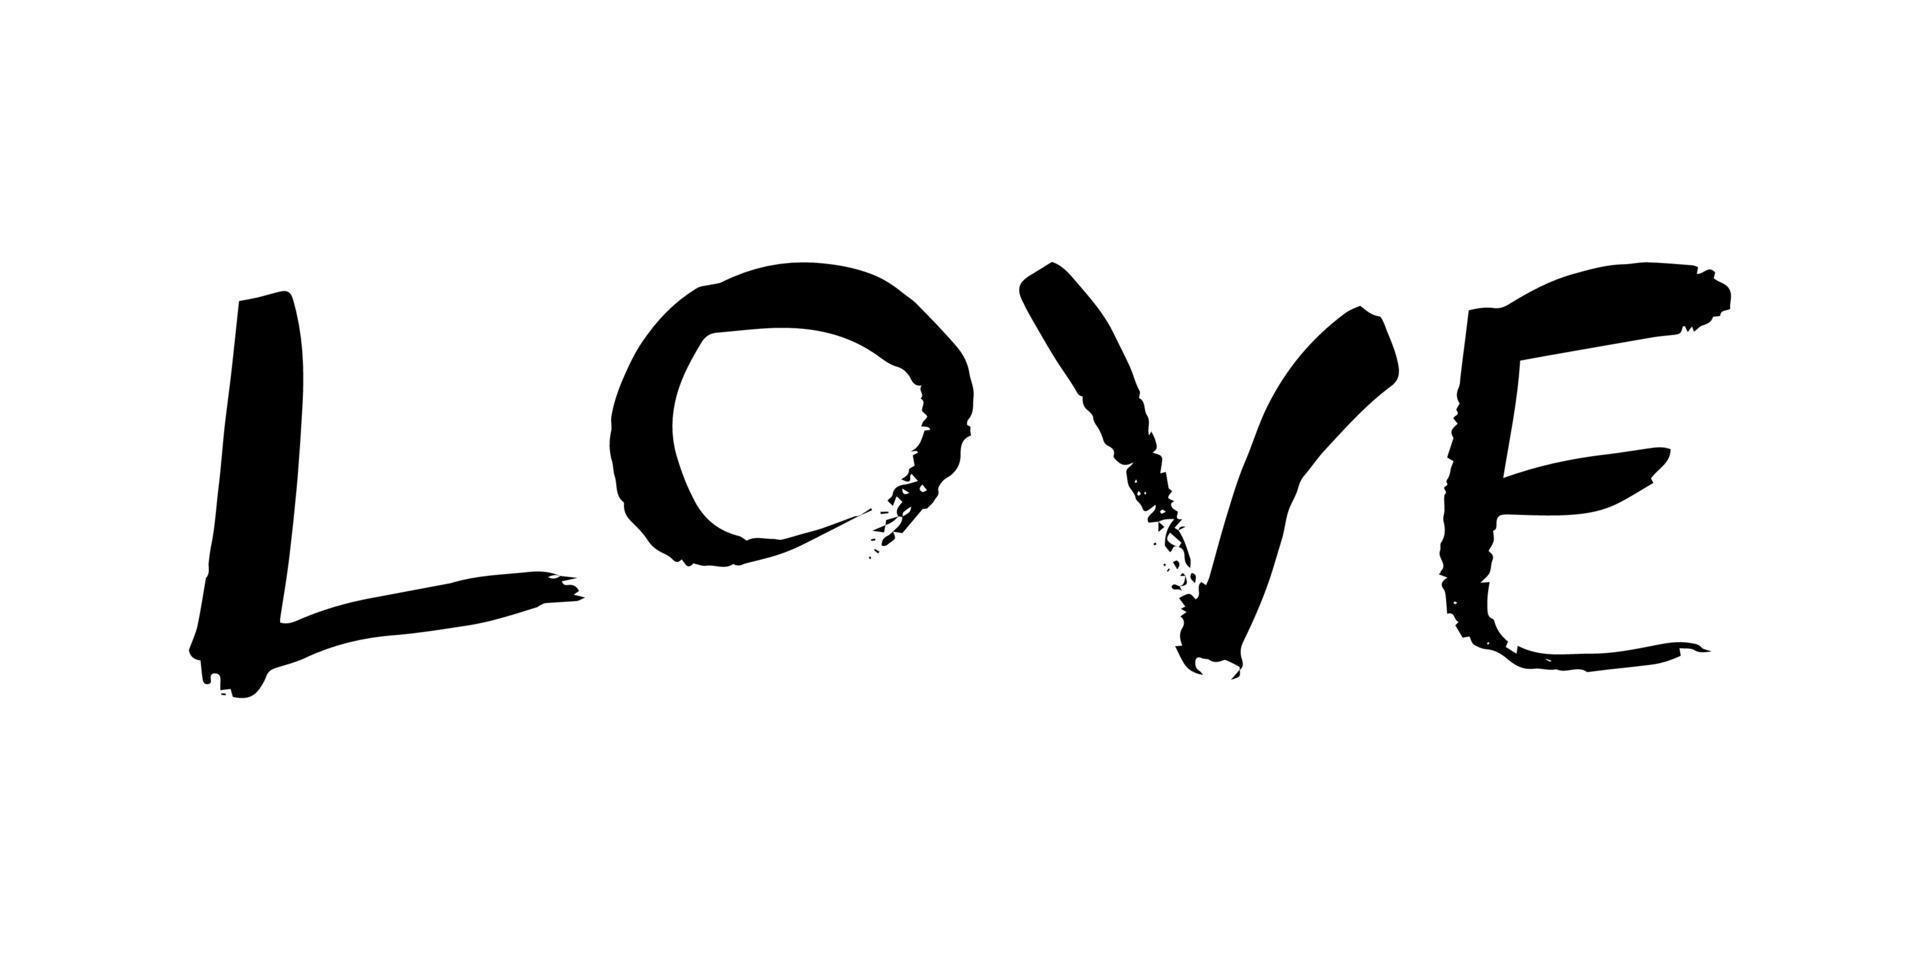 Lettering Love. Handwritten black inscription Love on a white background. Vector illustration